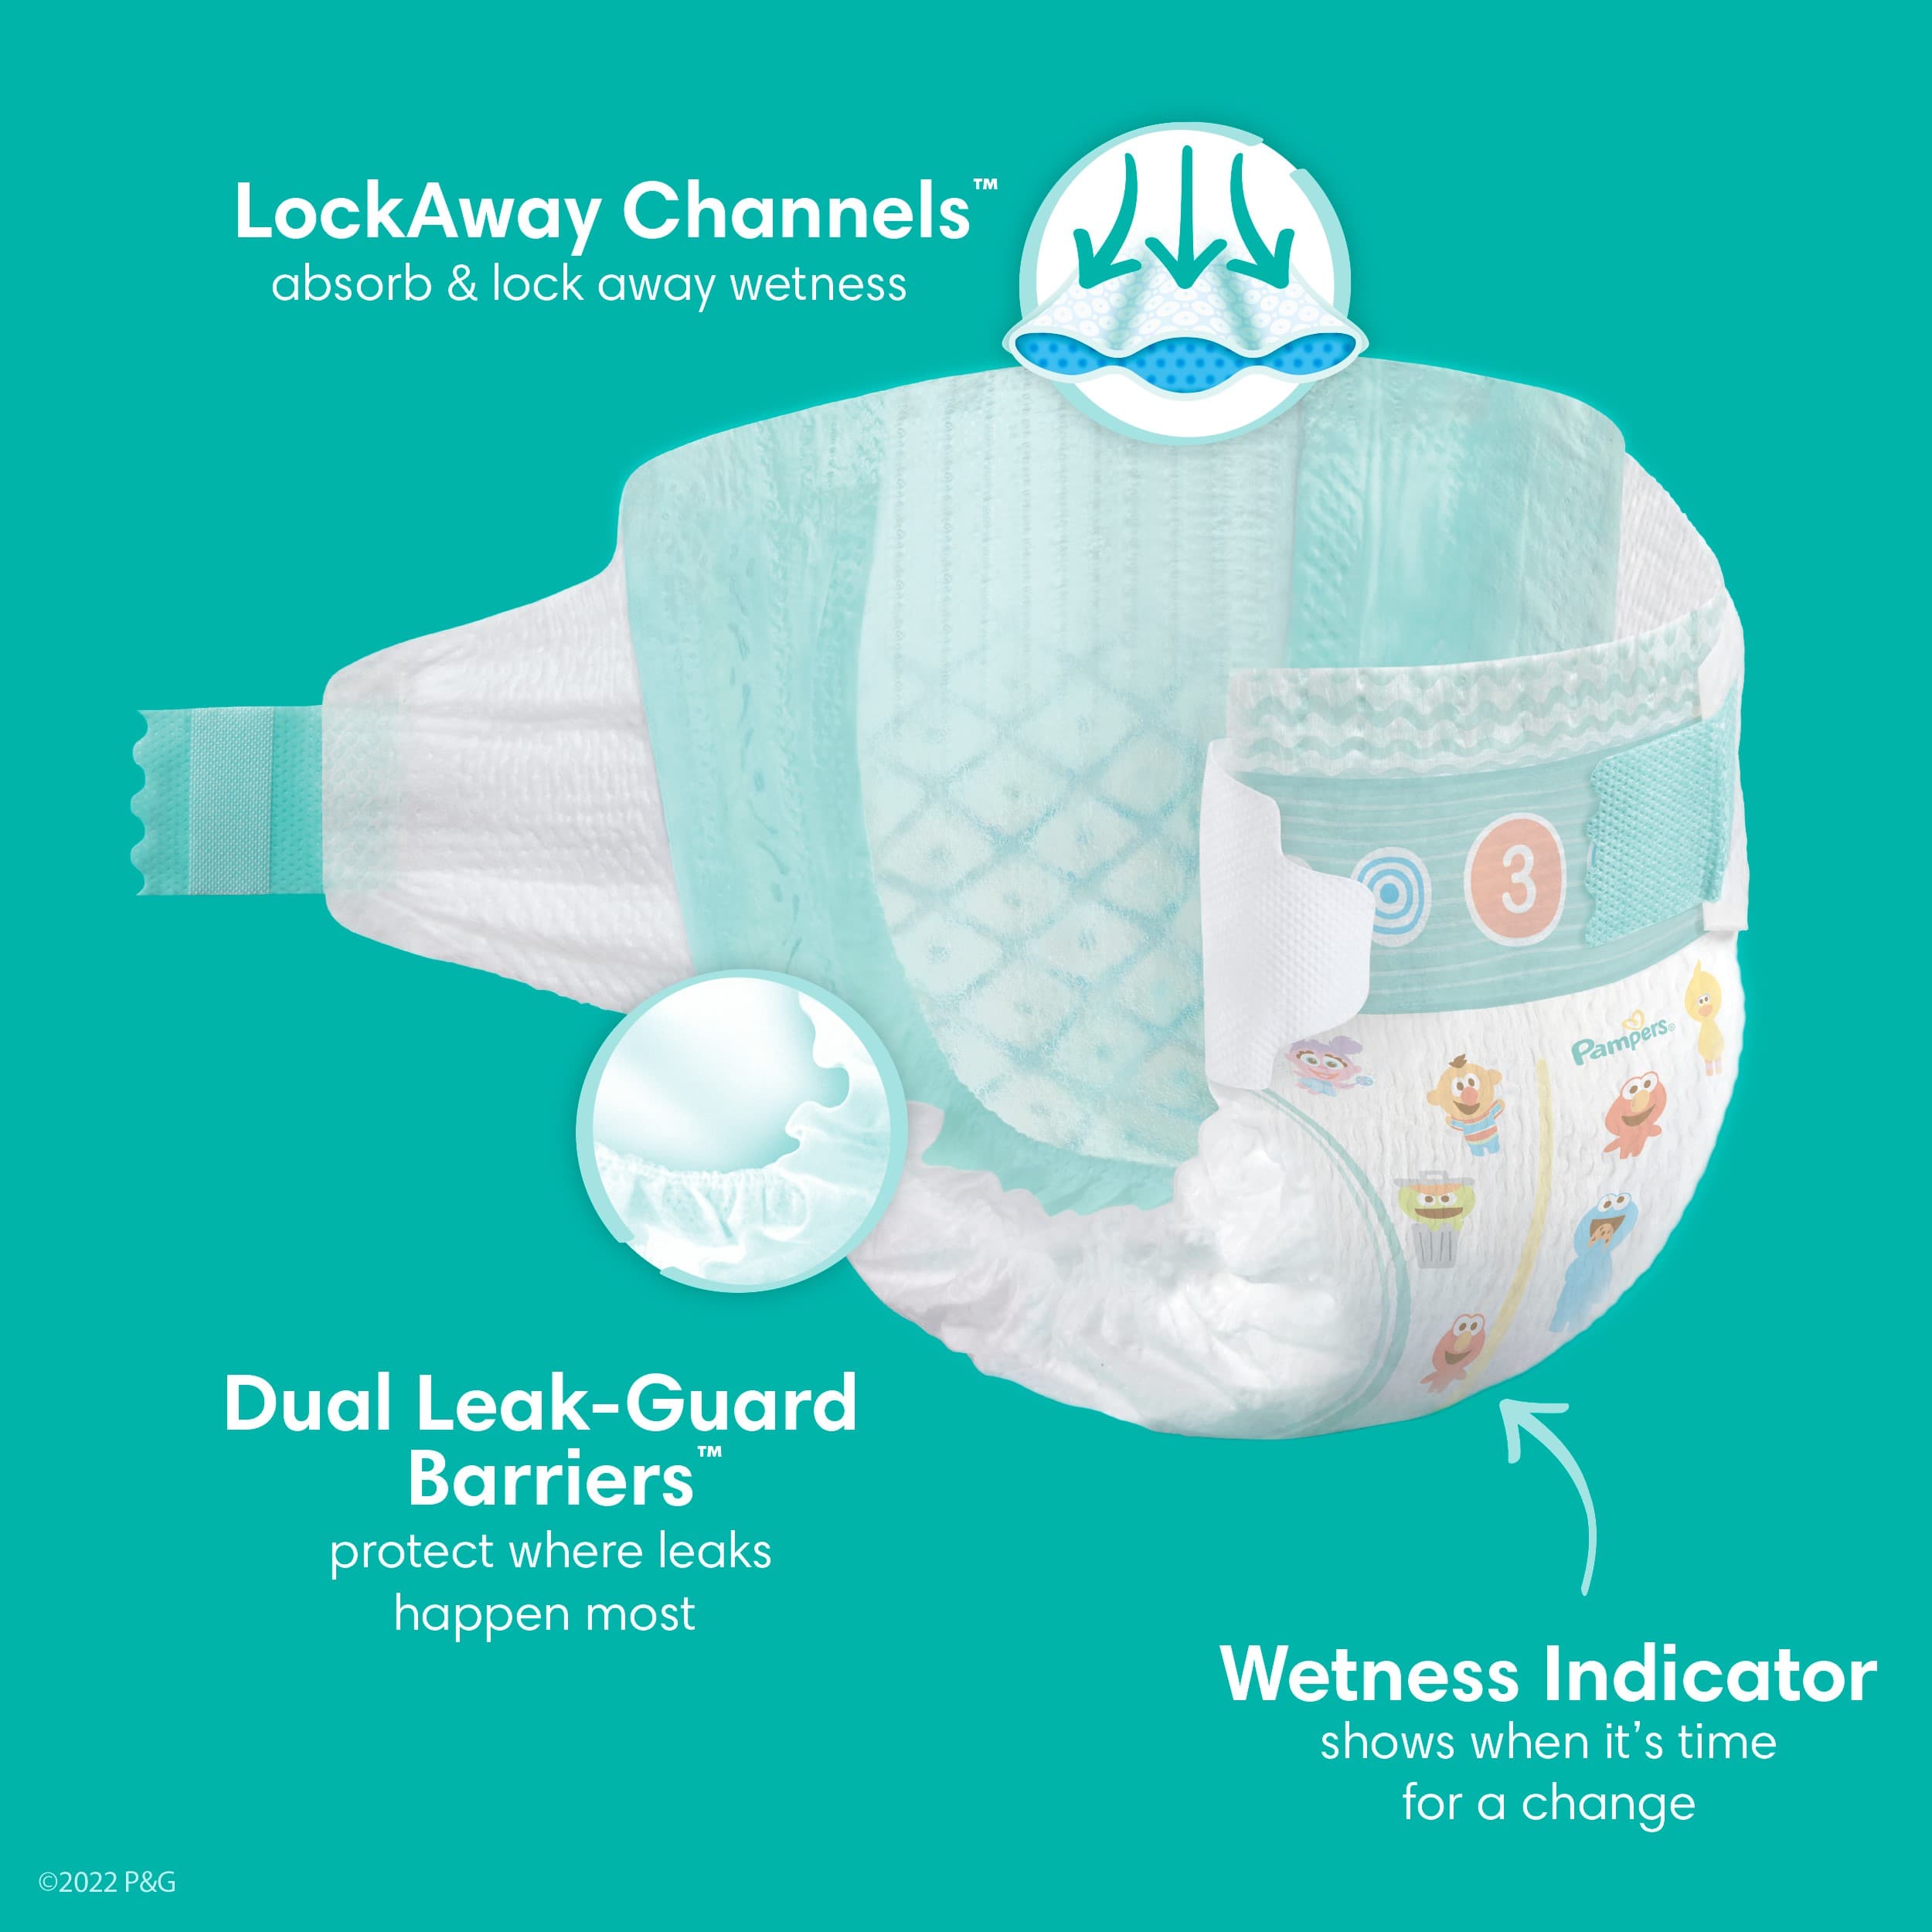 Diaper Brand Spotlight Series: Pampers - Diaper Dabbler